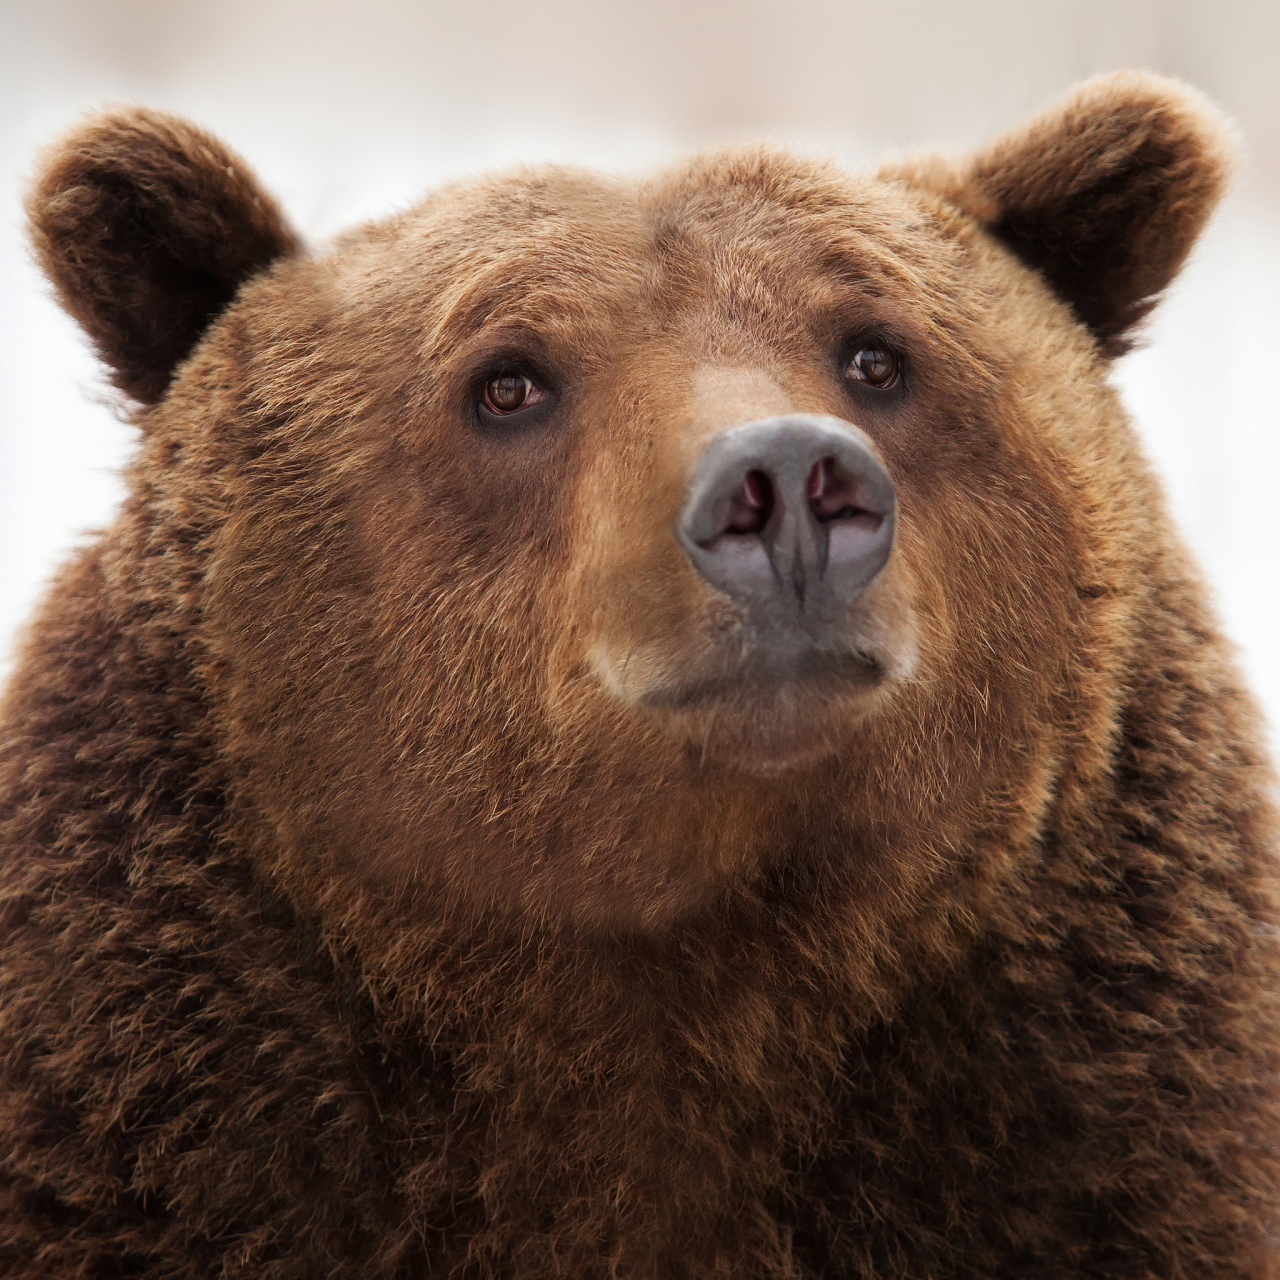 棕熊是一种非常适应力强的动物,它们可以在荒漠边缘,高山森林甚至北极